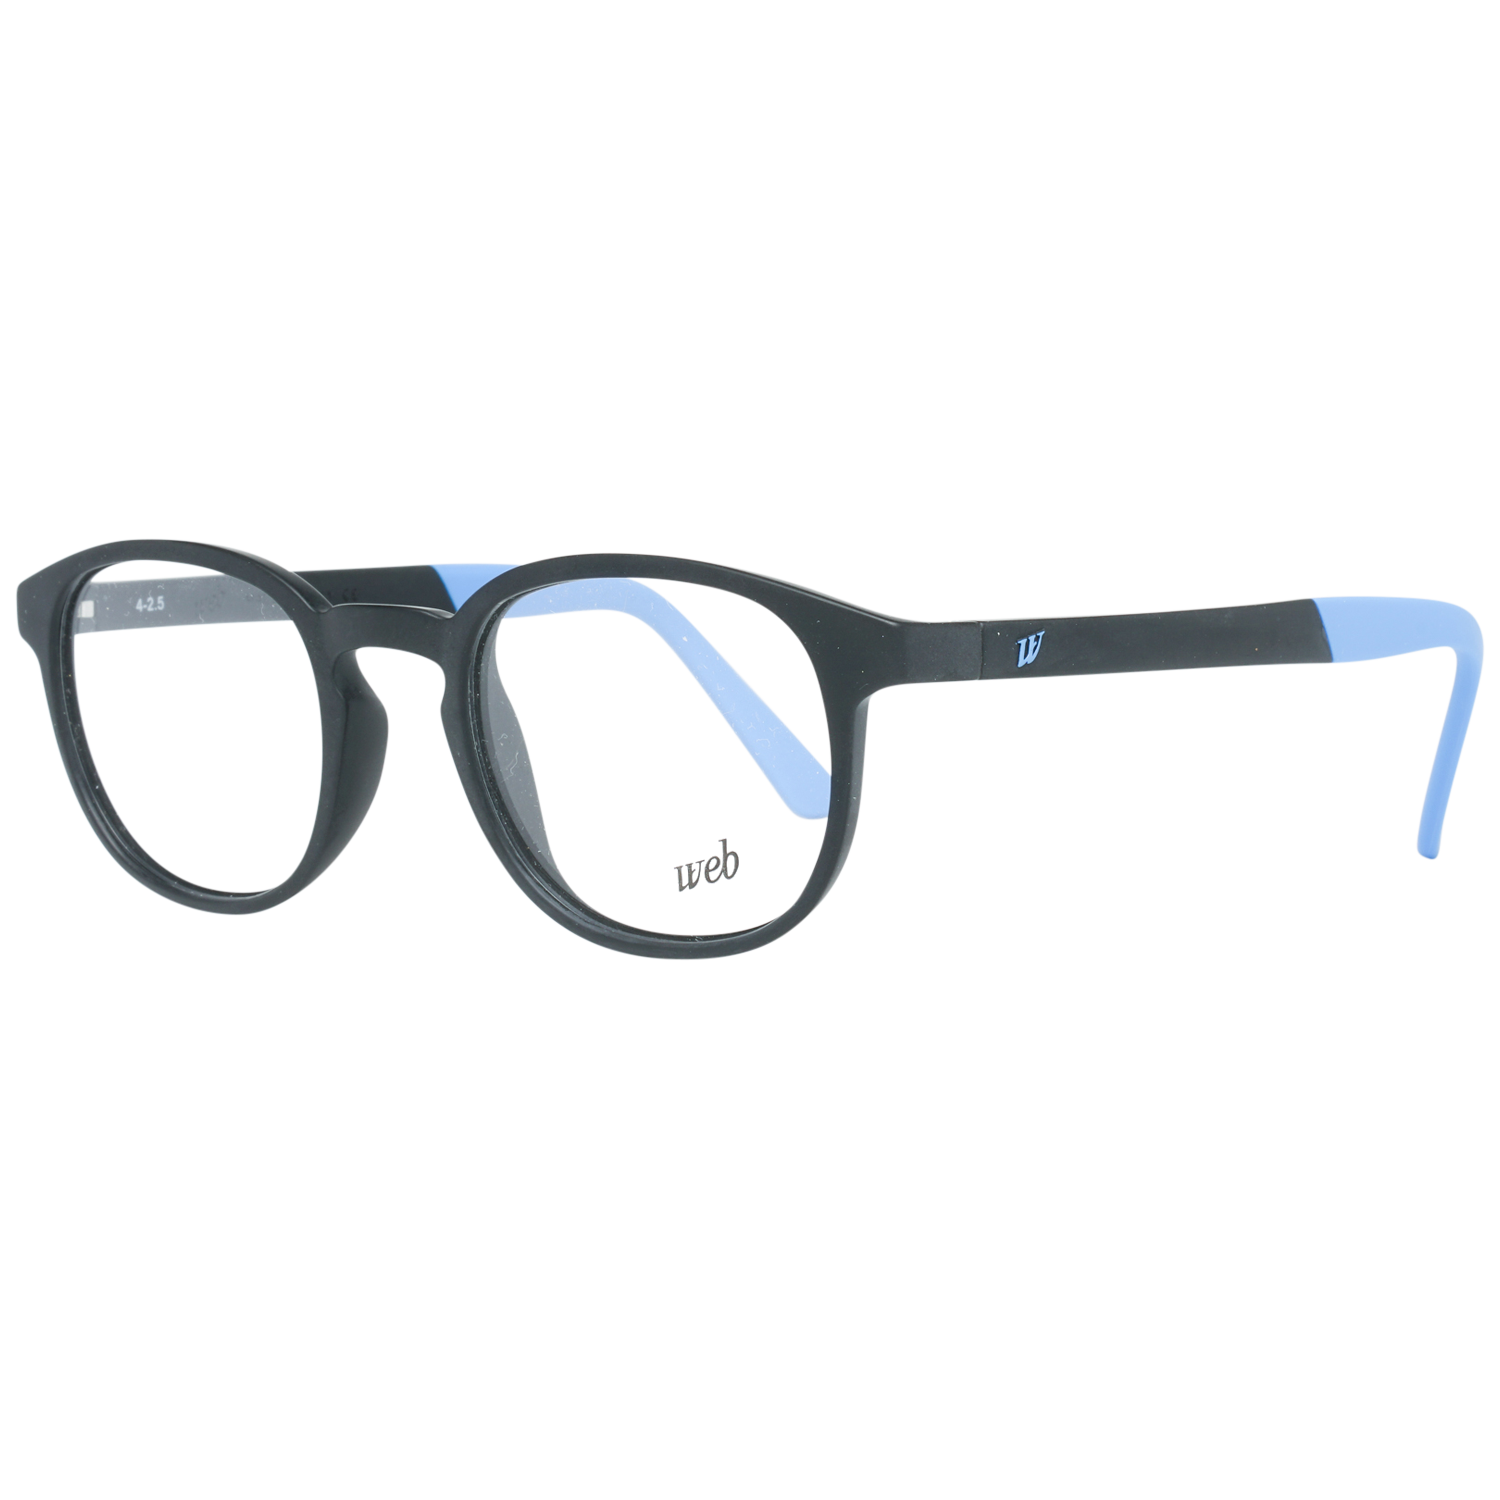 Web Frames Web Glasses Optical Frame WE5185 B02 47 Eyeglasses Eyewear UK USA Australia 